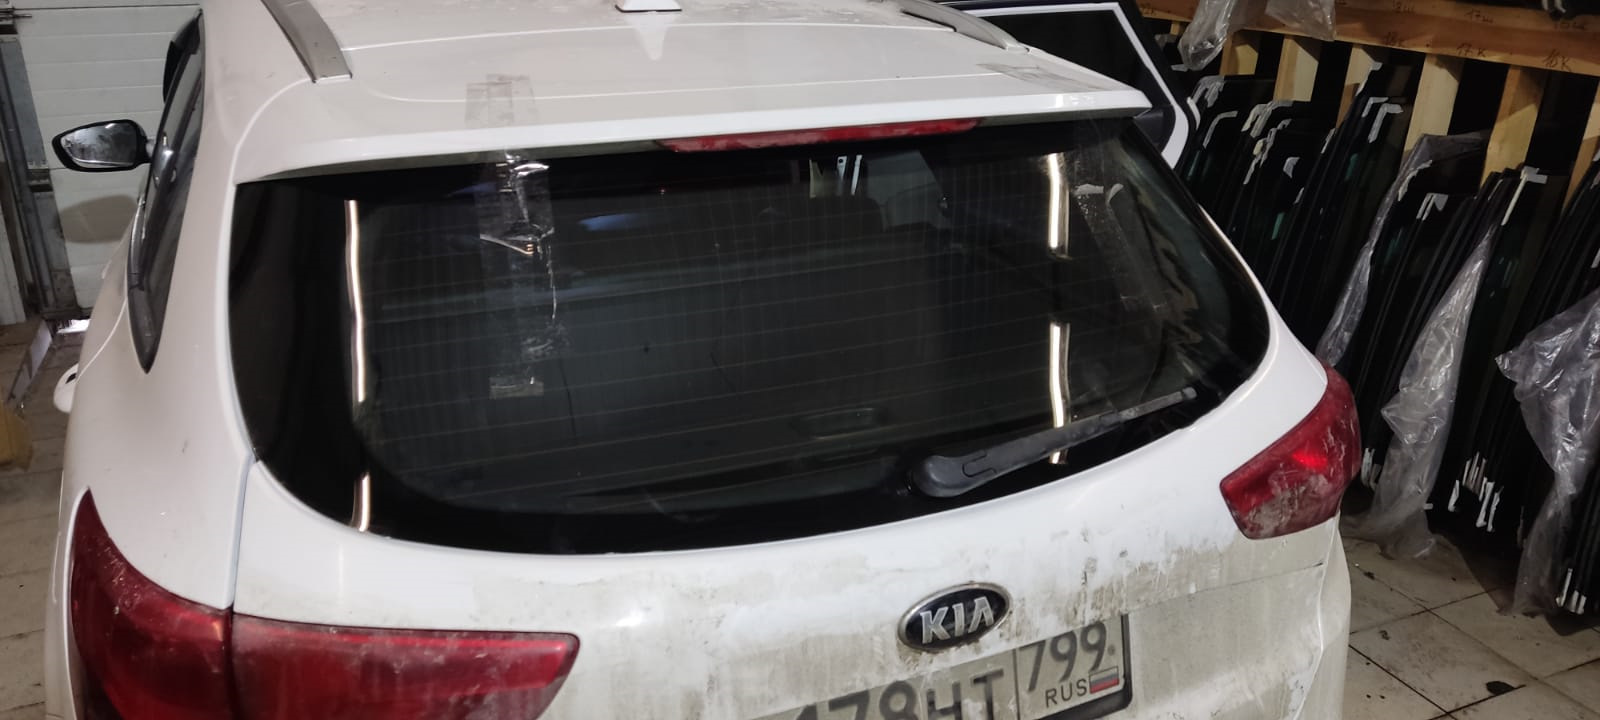 Киа сид заднее стекло. Пластиковая накладка сверху заднего стекла Kia Ceed SW 2019. Дефлектор на заднее стекло Киа Рио 4. Пластиковая накладка на стекло Kia Ceed SW 2019. Заднее стекло Киа спектра изнутри.